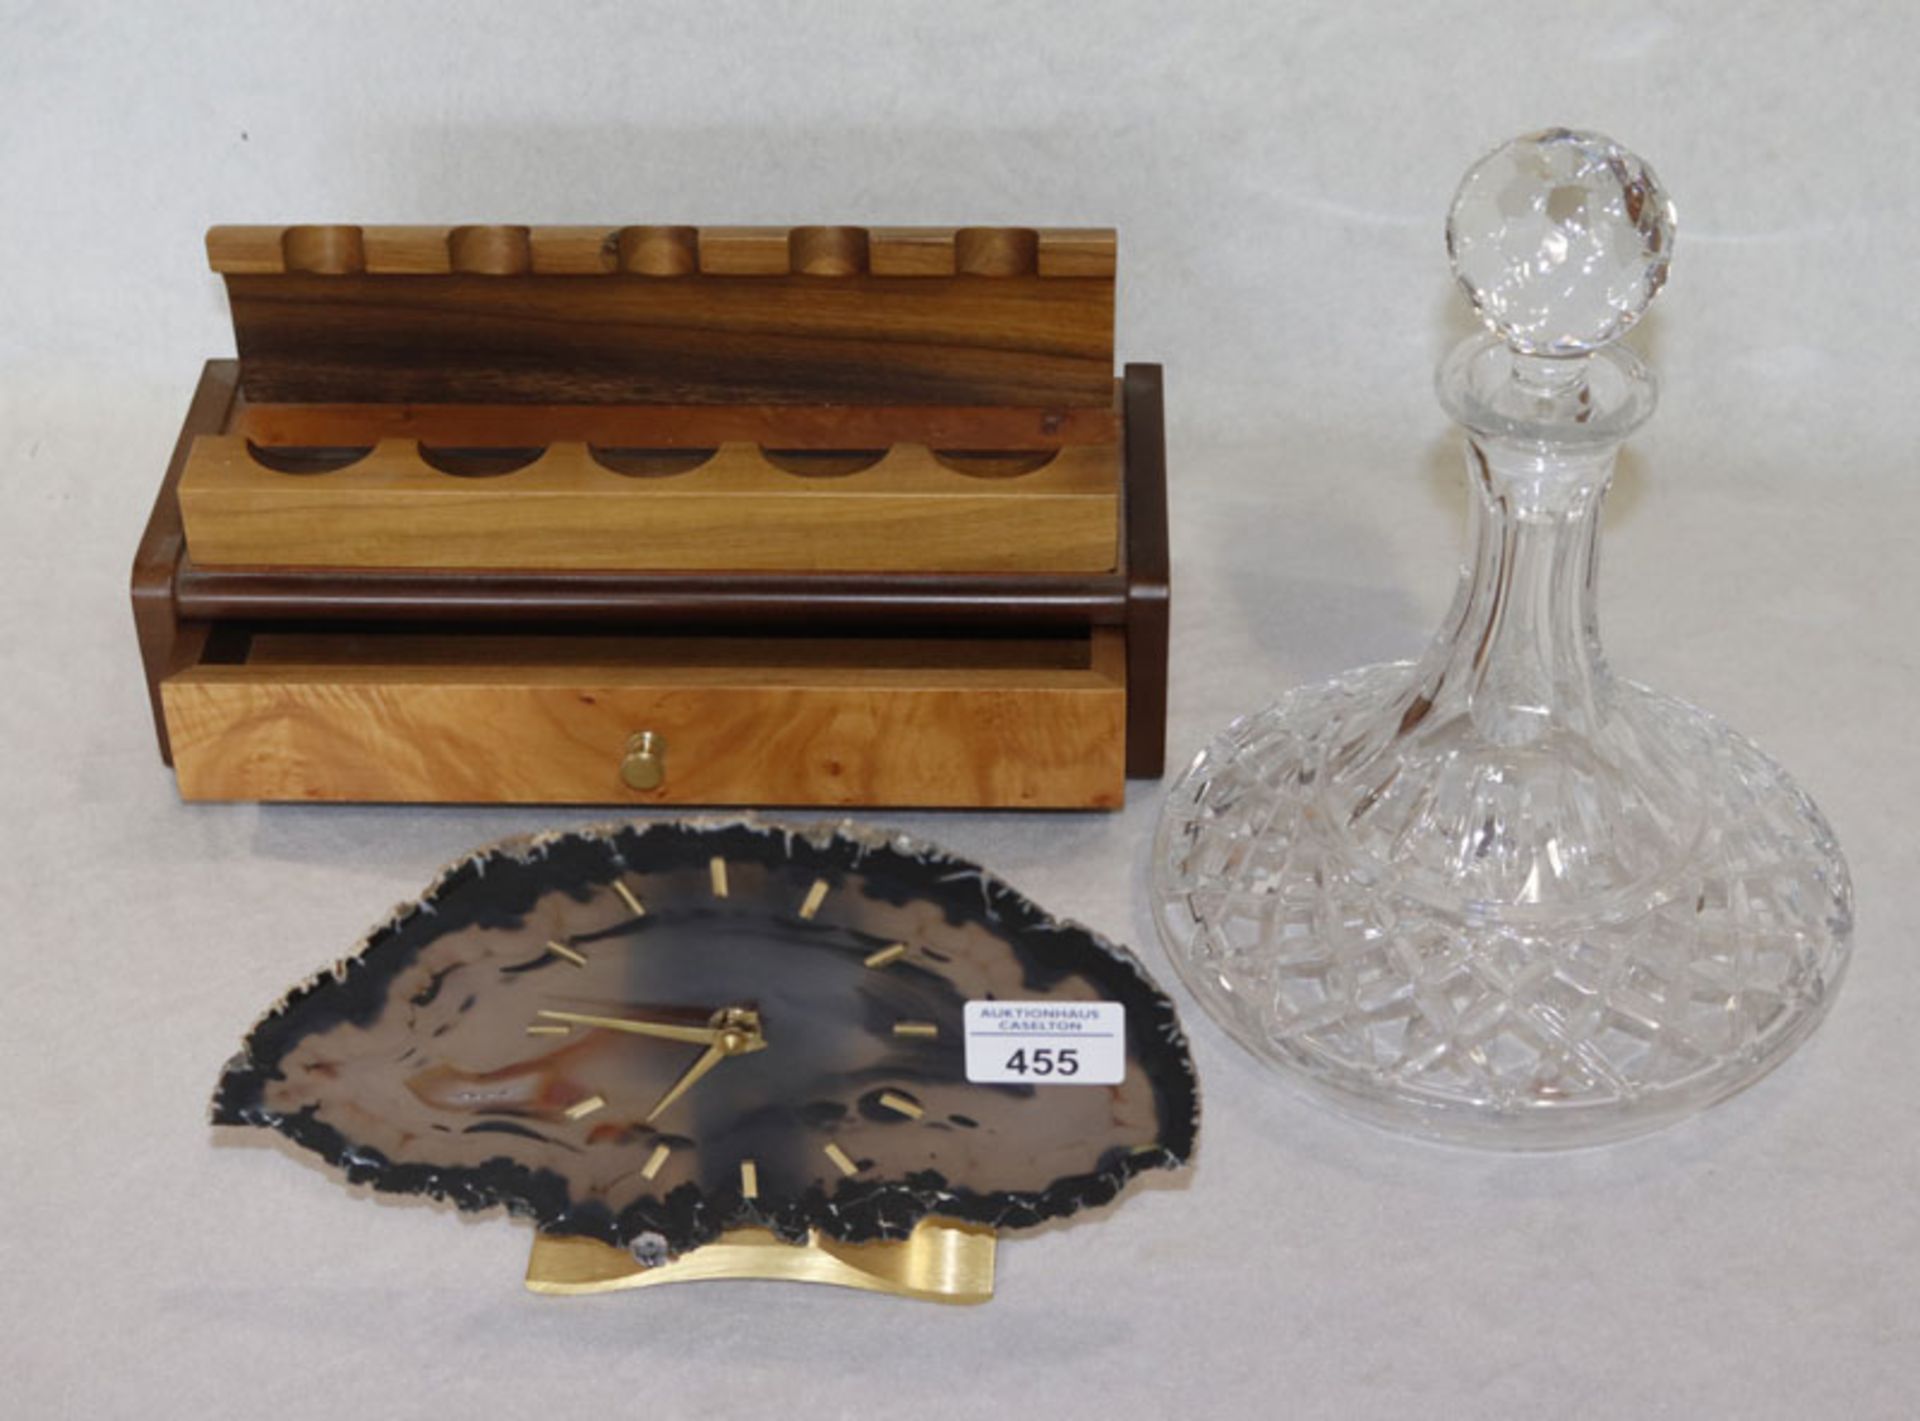 Konvolut: Tischuhr aus Achatscheibe, H 15 cm, B 25 cm, T 5 cm, Glas Weinkaraffe, H 25 cm, D 21 cm,